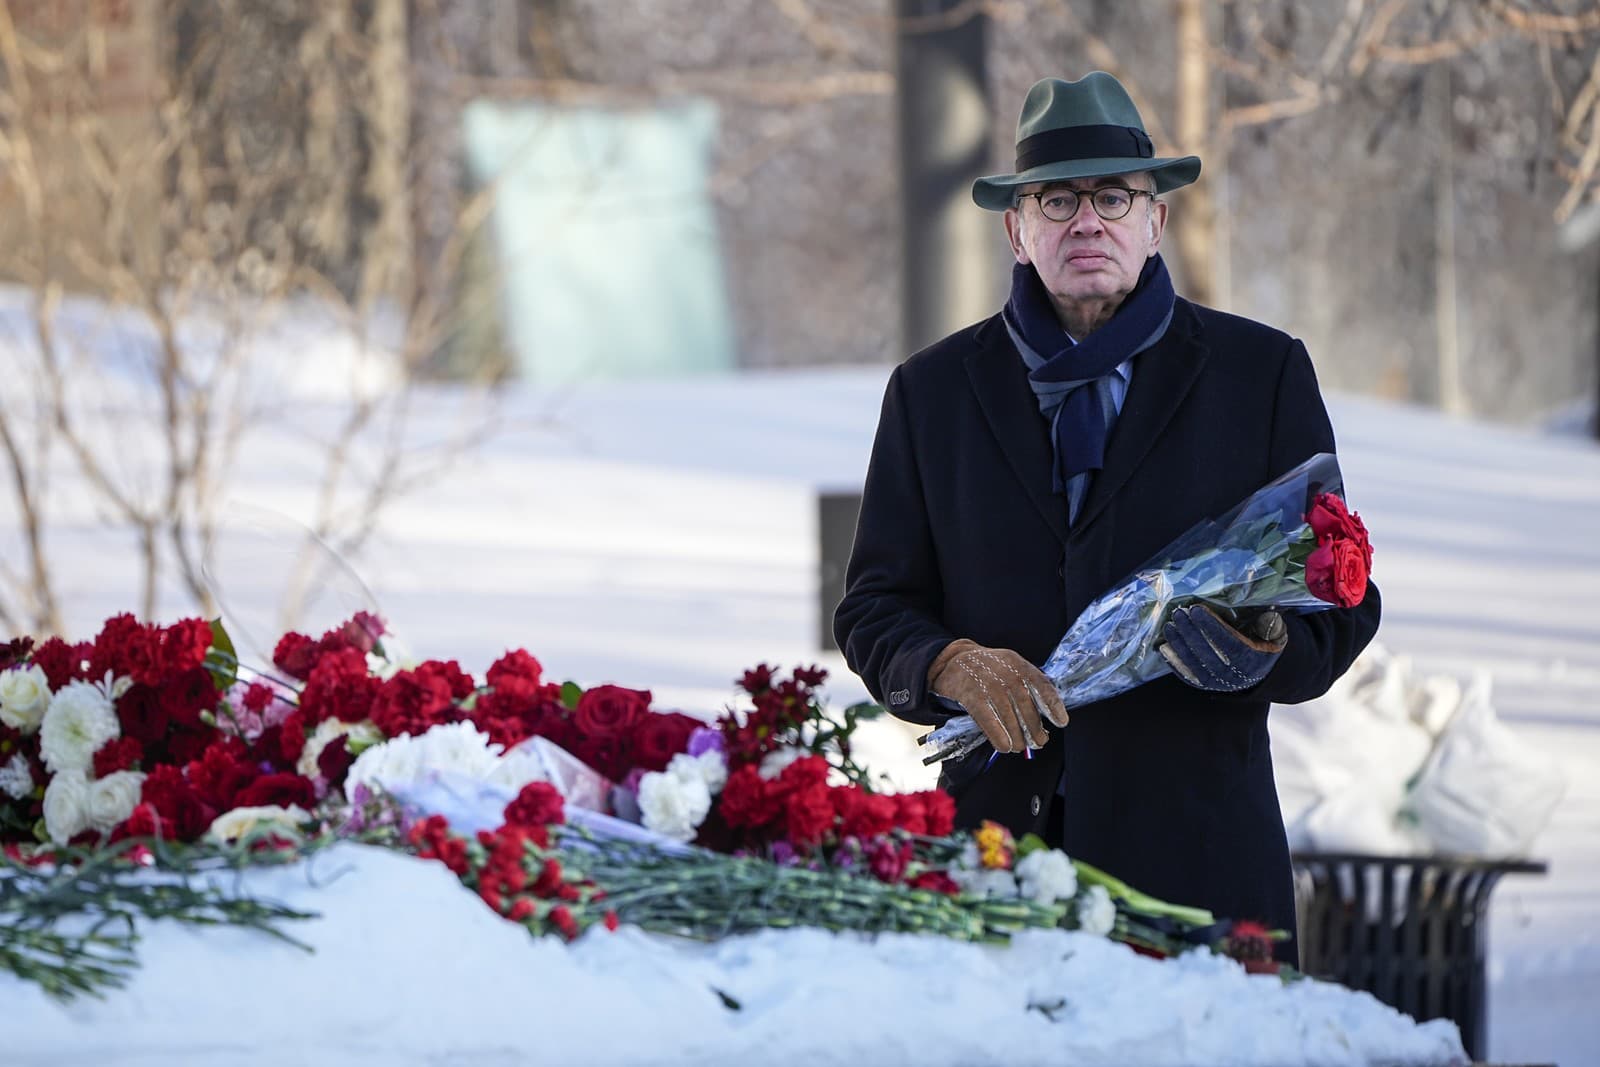 Francúzsky veľvyslanec v Rusku Pierre Lévy kladie kvety, aby vzdal poslednú úctu Alexejovi Navaľnému.